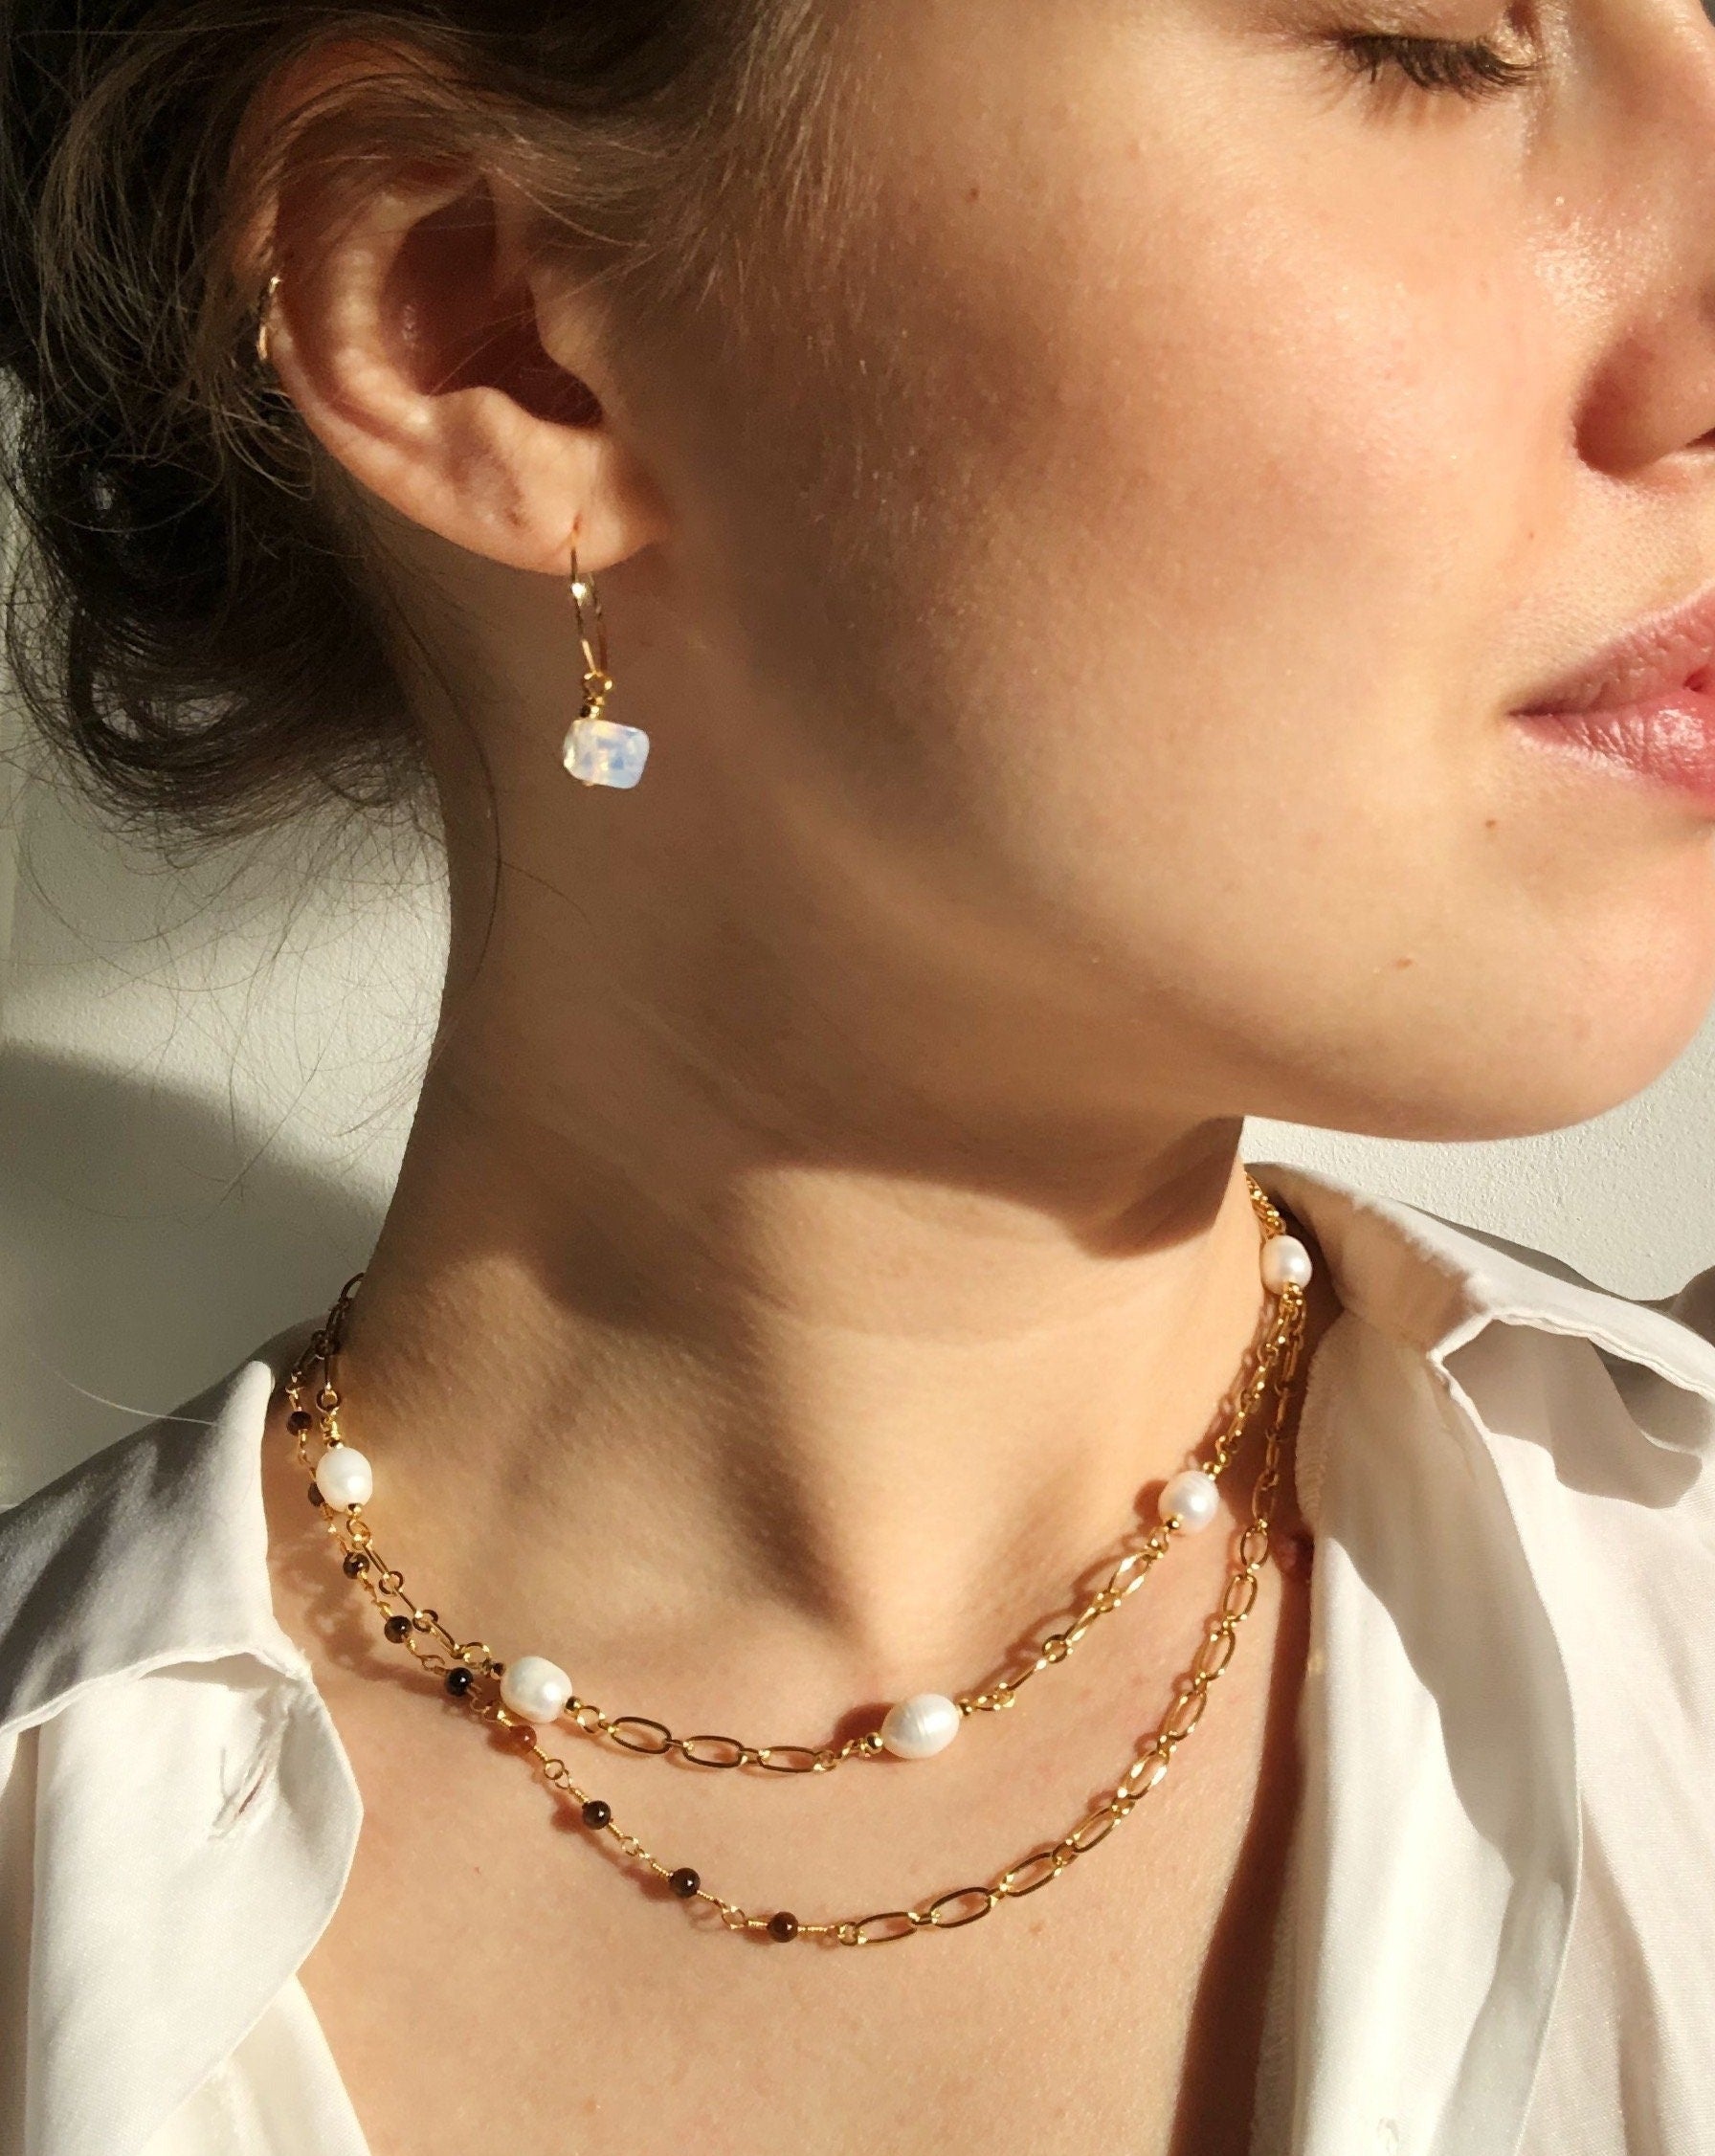 Souvenir officieel Verstrooien Gouden oorbellen met Opalite hangers | Goud stainless steel – Handmade  Amsterdam